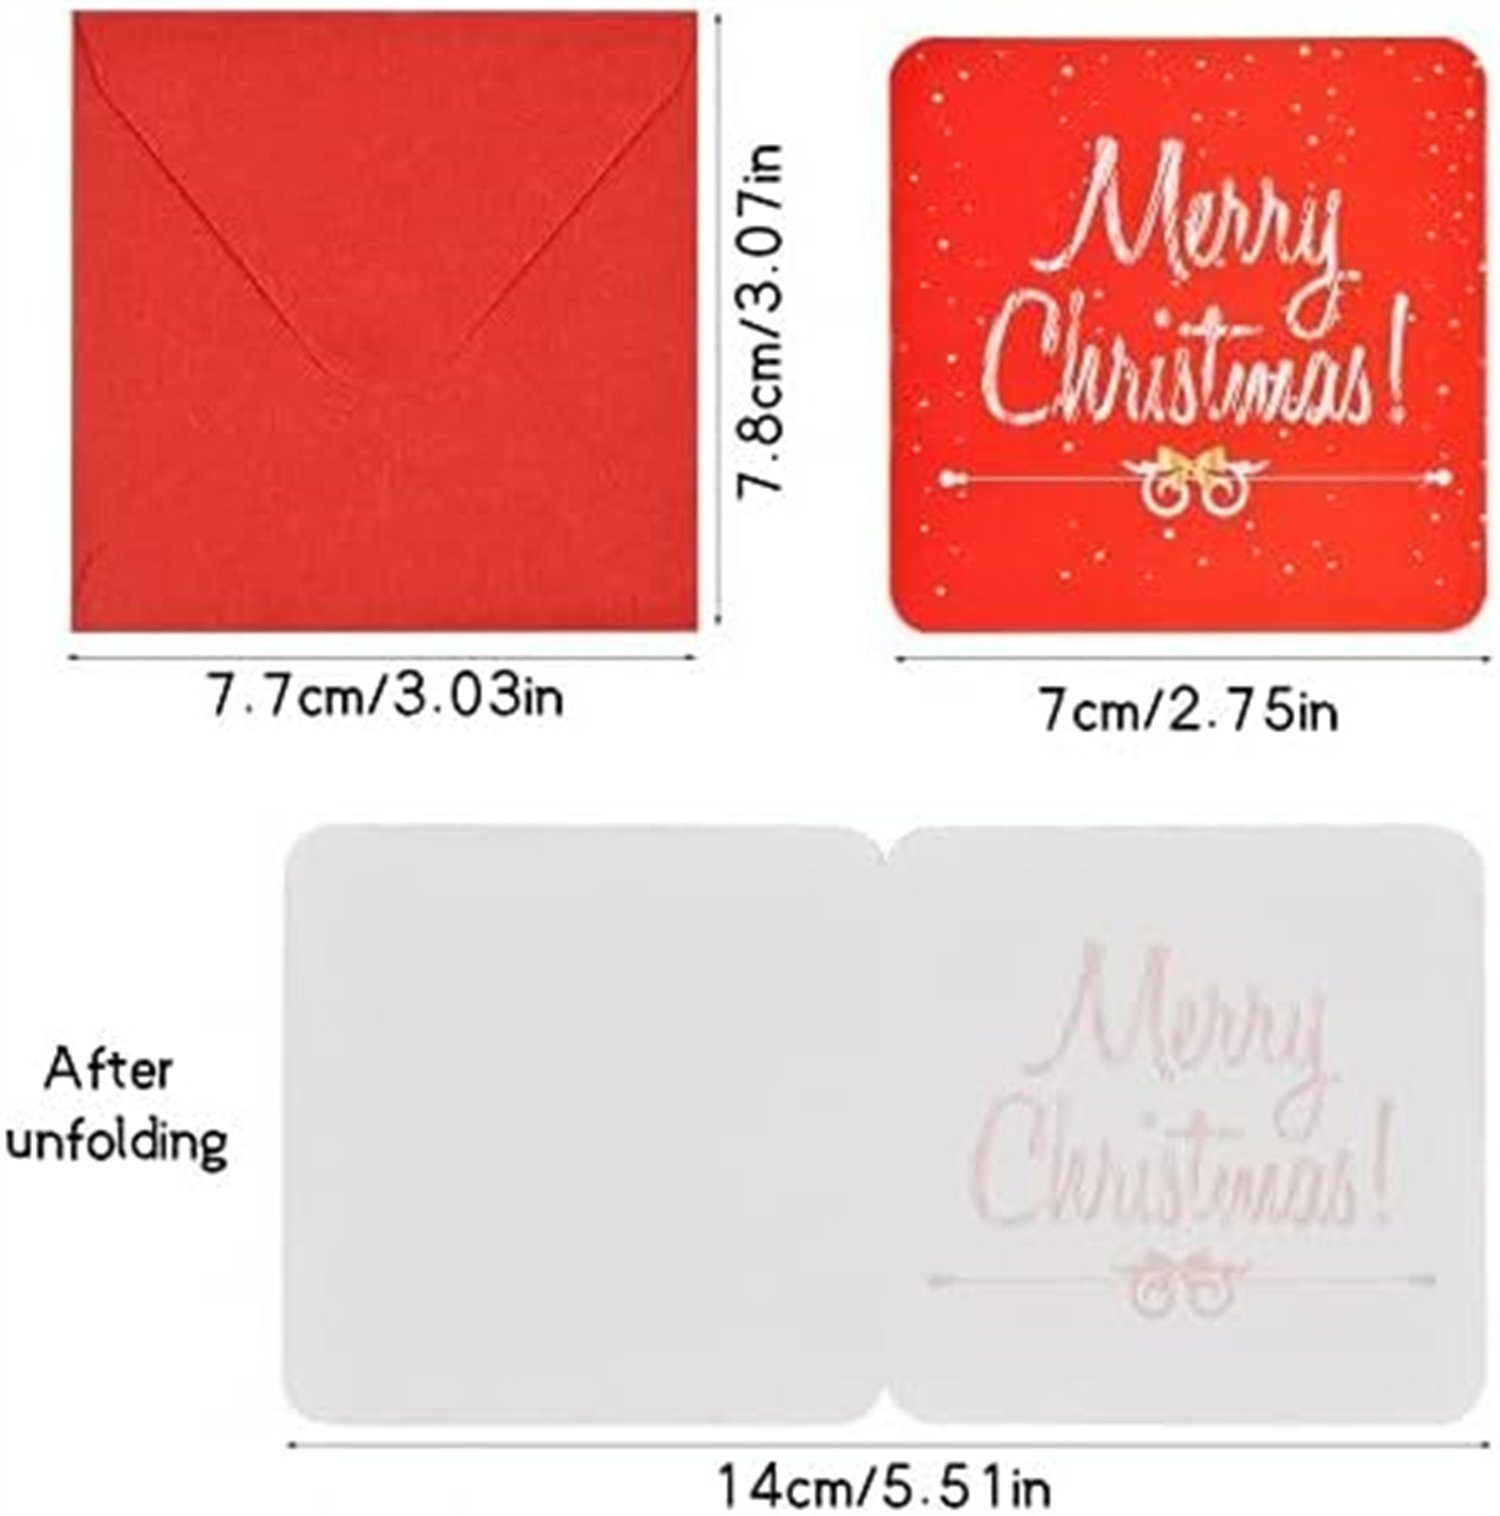 innen Grußkarten blanko Mini-karten, 24-teilig, Inshow Weihnachtskarten-Set, niedliche